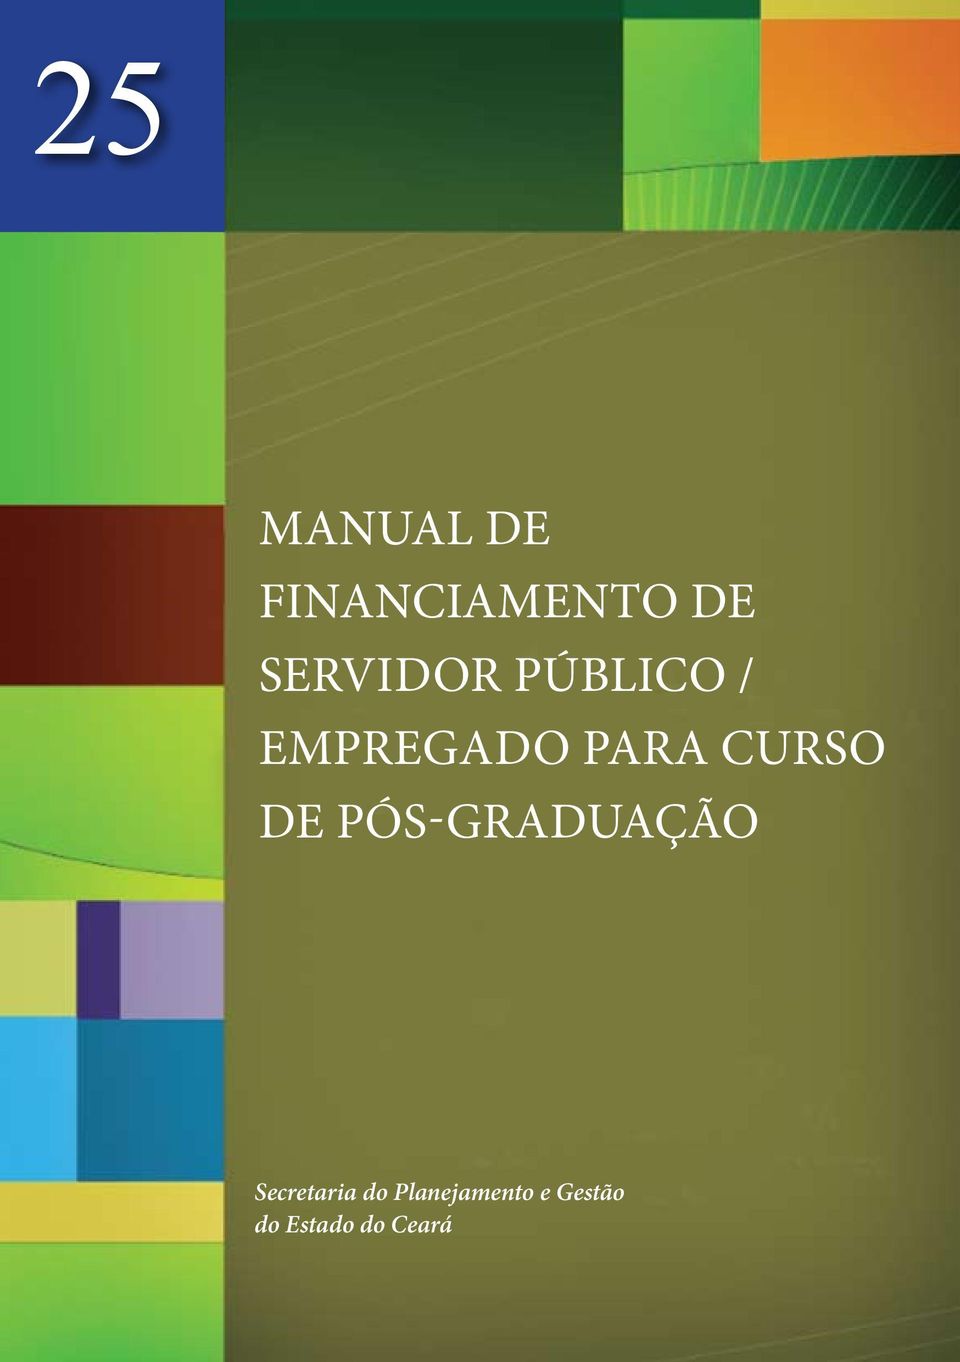 CURSO DE PÓS-GRADUAÇÃO Secretaria